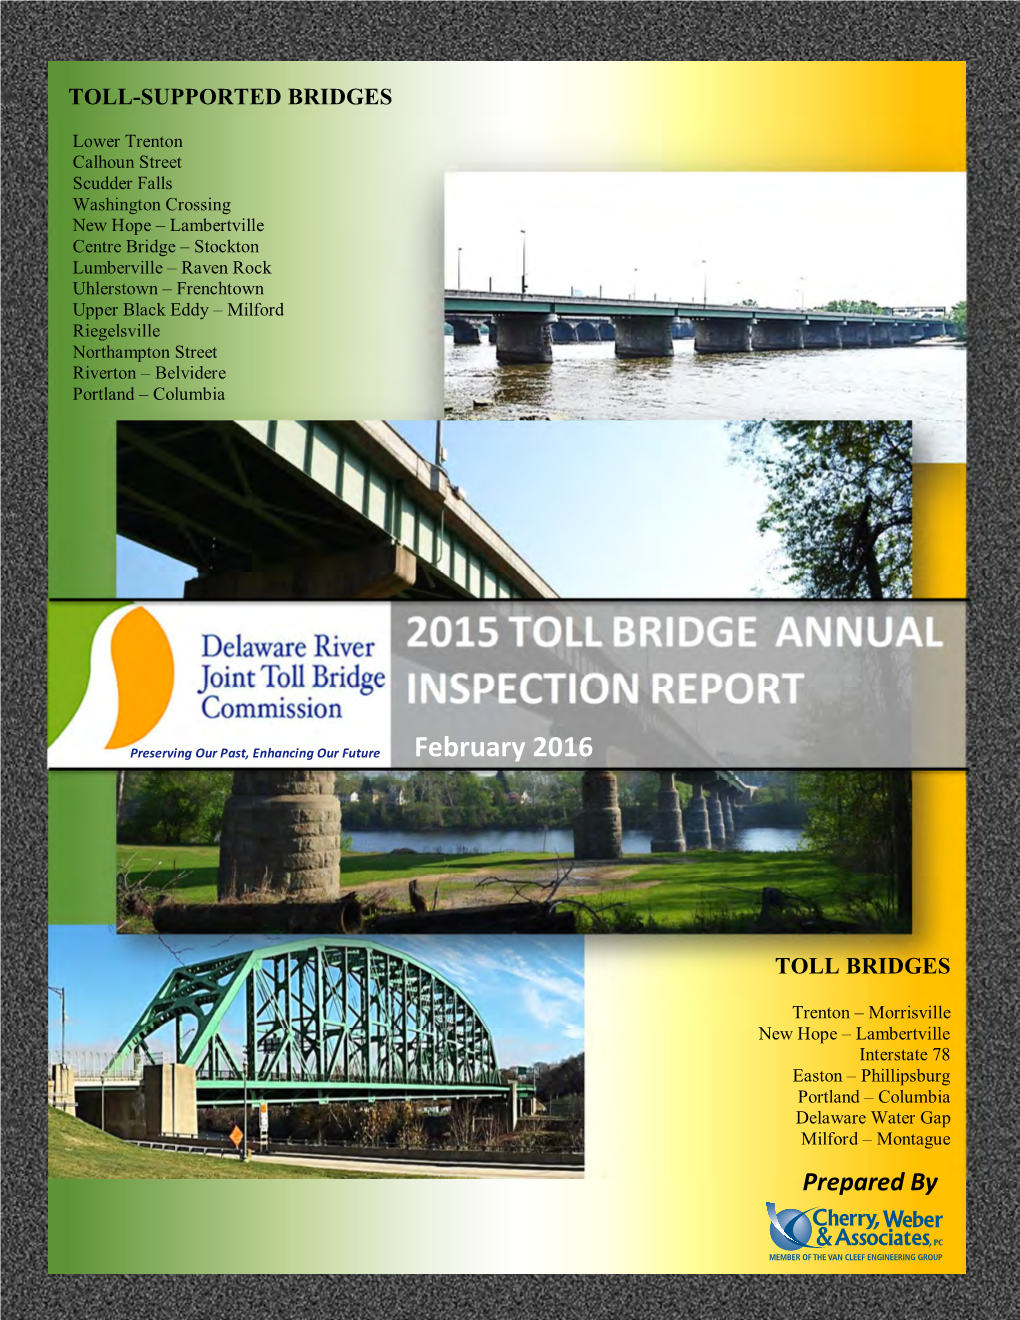 Trenton-Morrisville Toll Bridge Facility (Structure No